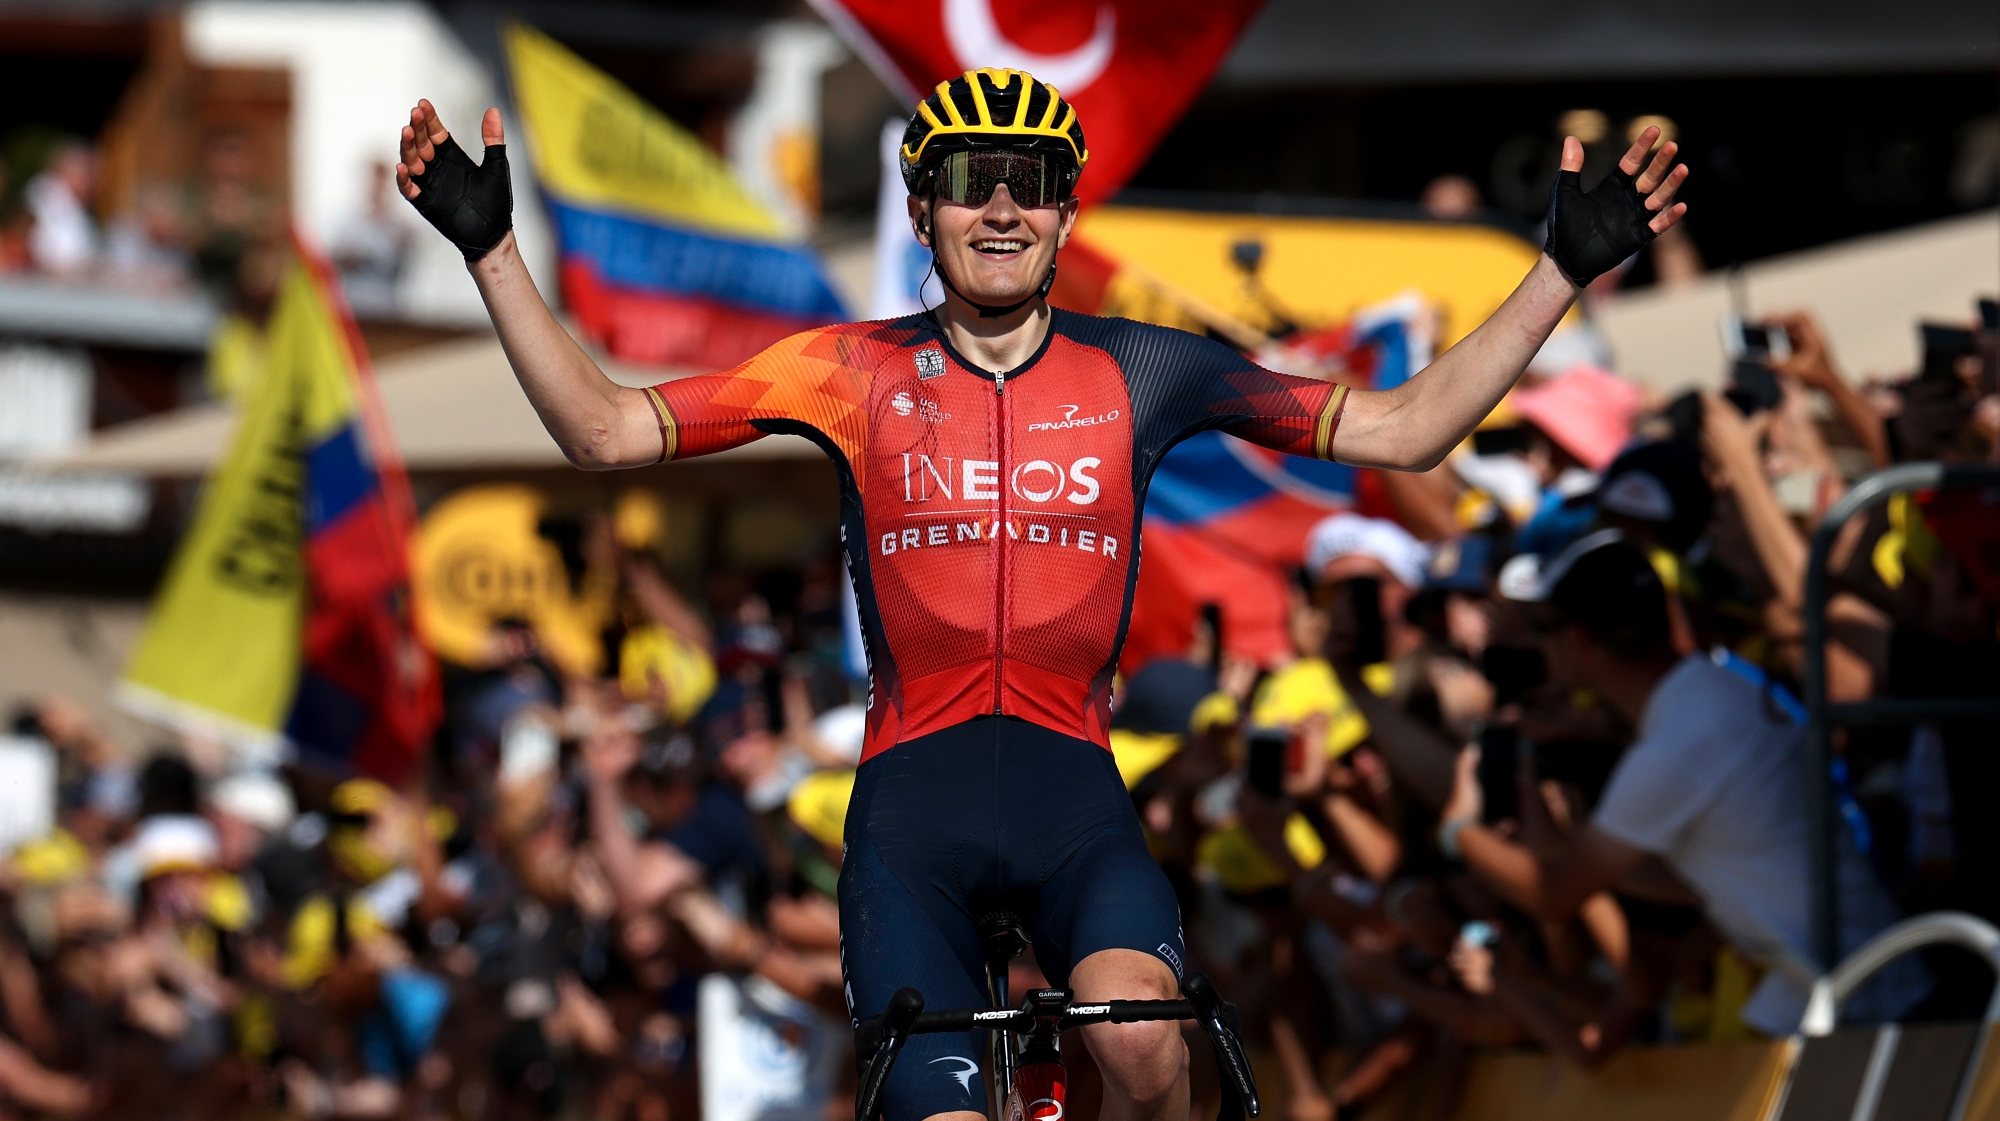 Carlos Rodríguez carimbou a terceira vitória espanhola neste Tour e a segunda consecutiva da Ineos depois de Michal Kwiatkowski